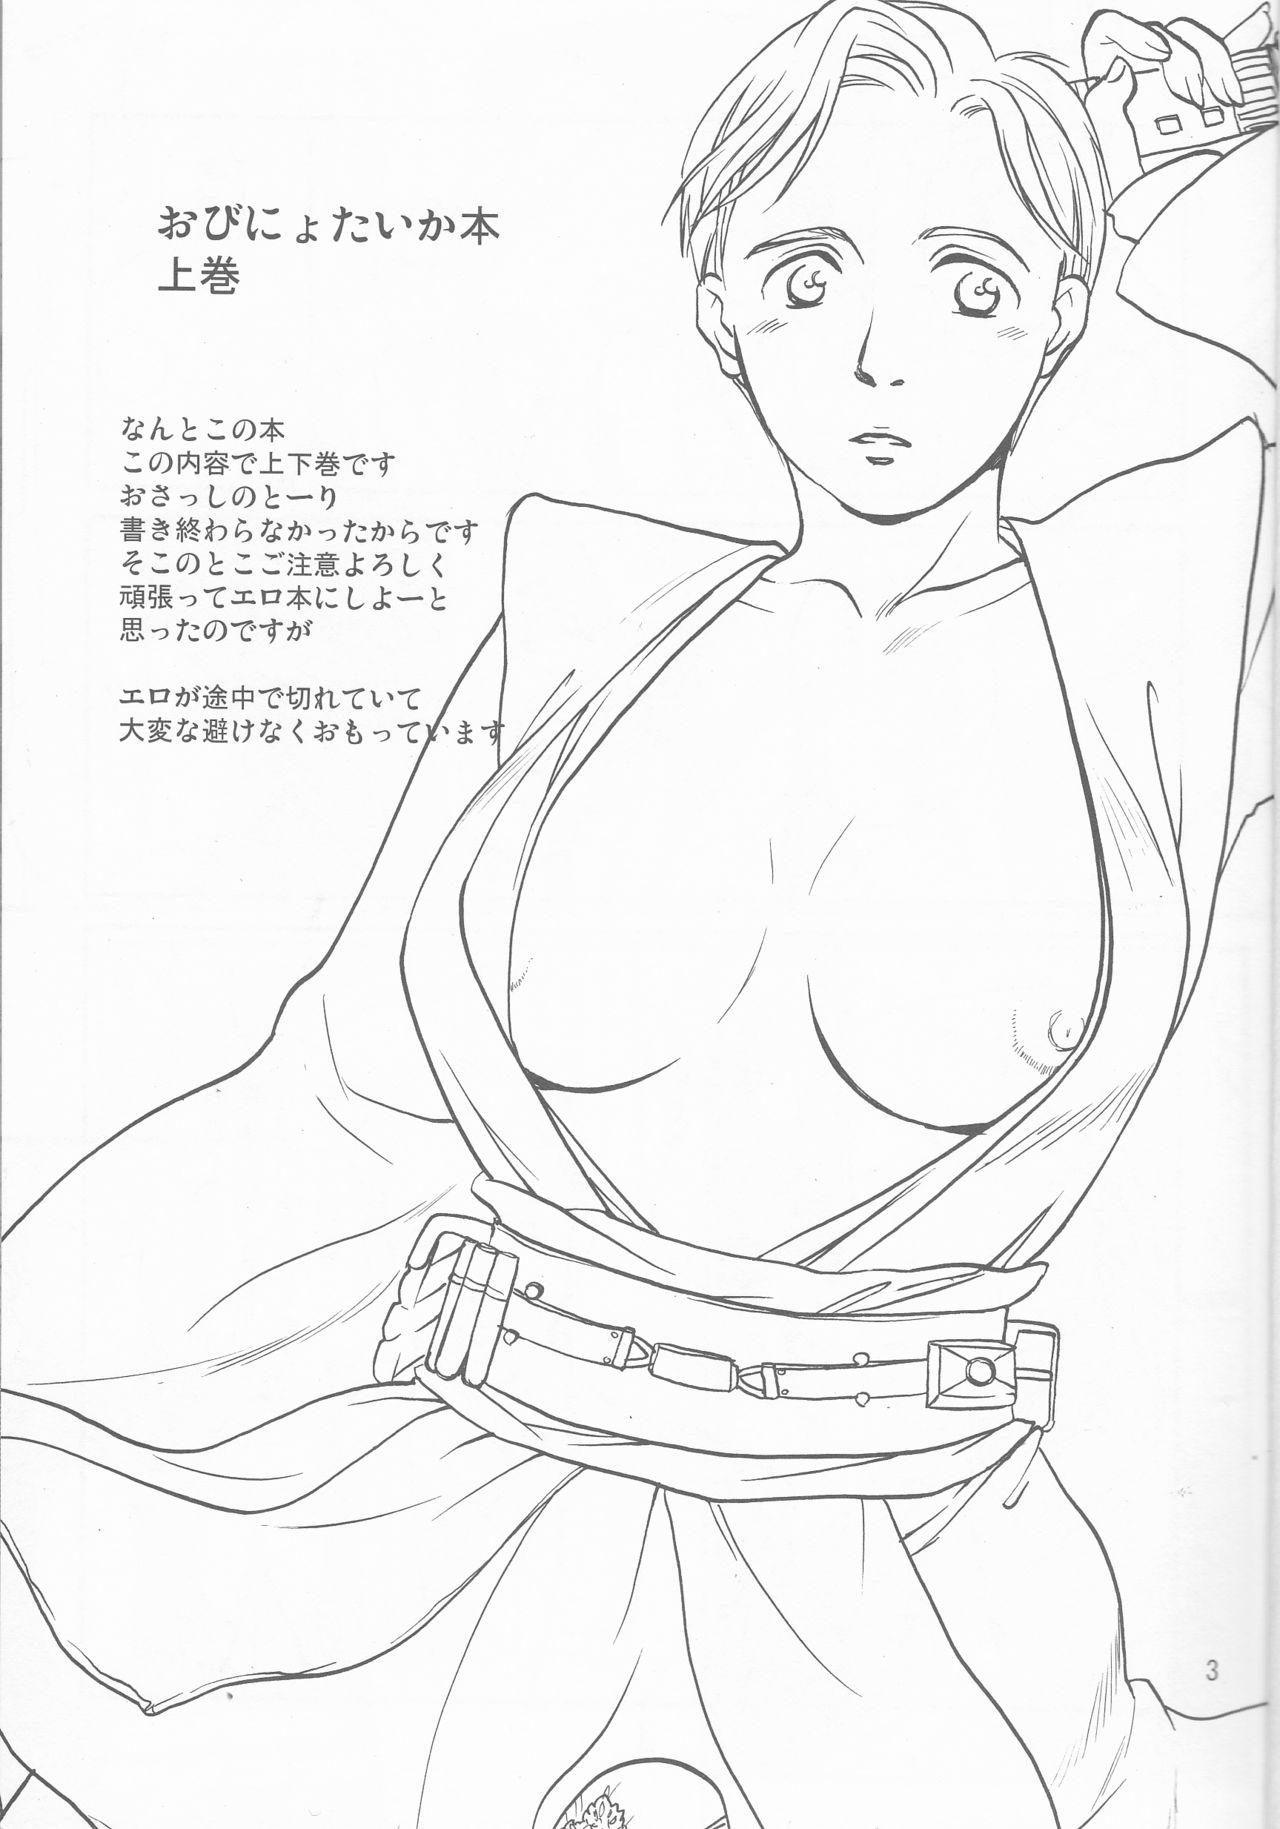 Obi Female Transformation Book 1 of 2 2